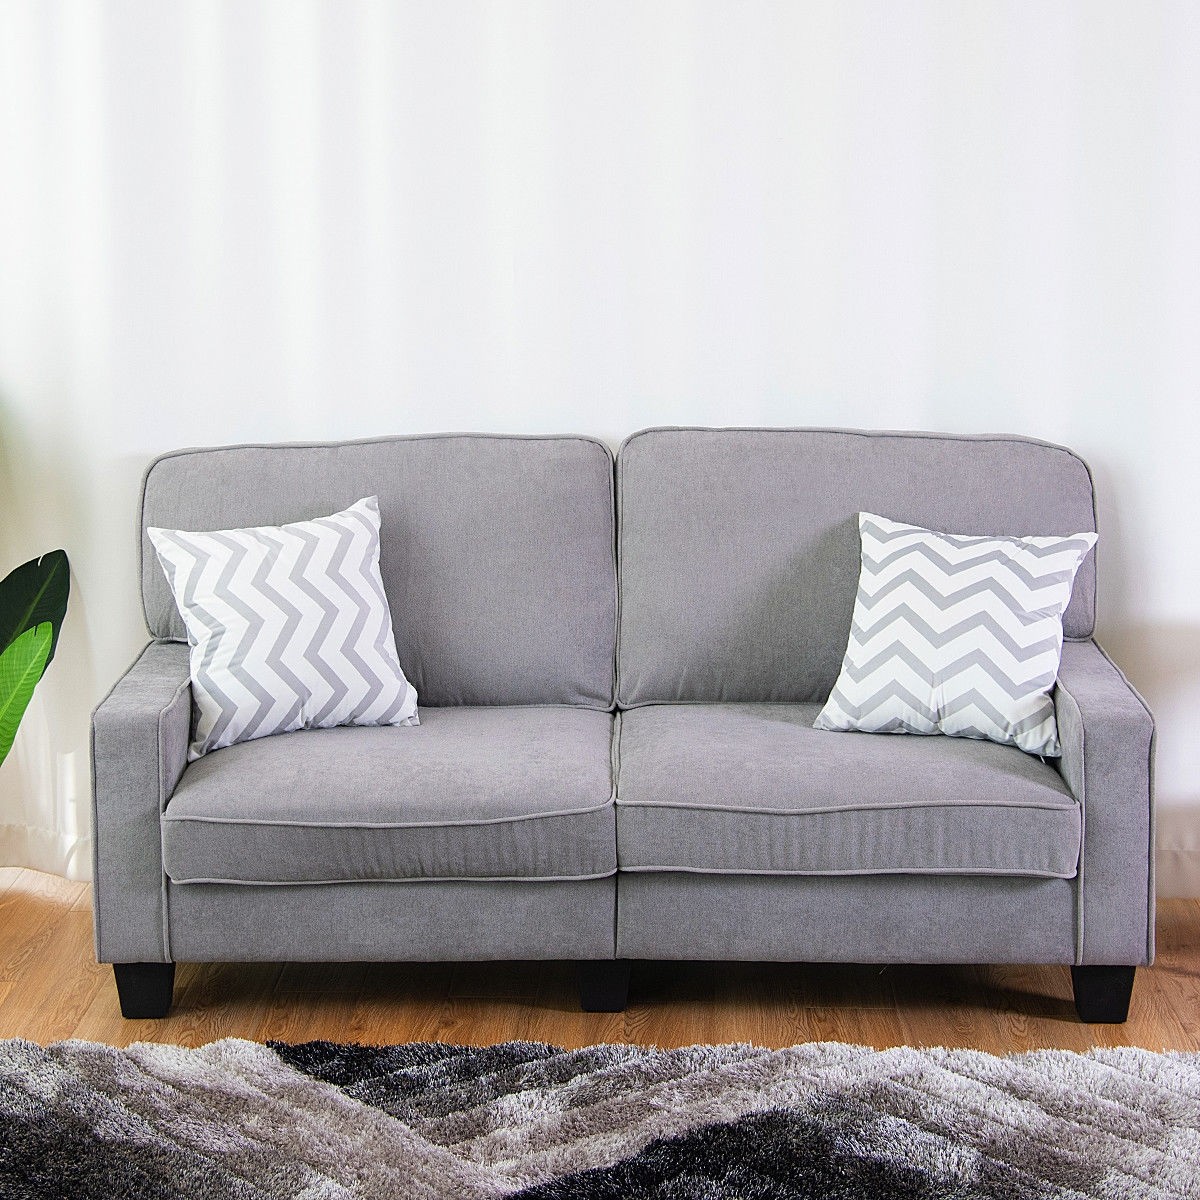 Hướng dẫn mua sắm ghế sofa: 3 mẹo bạn cần biết